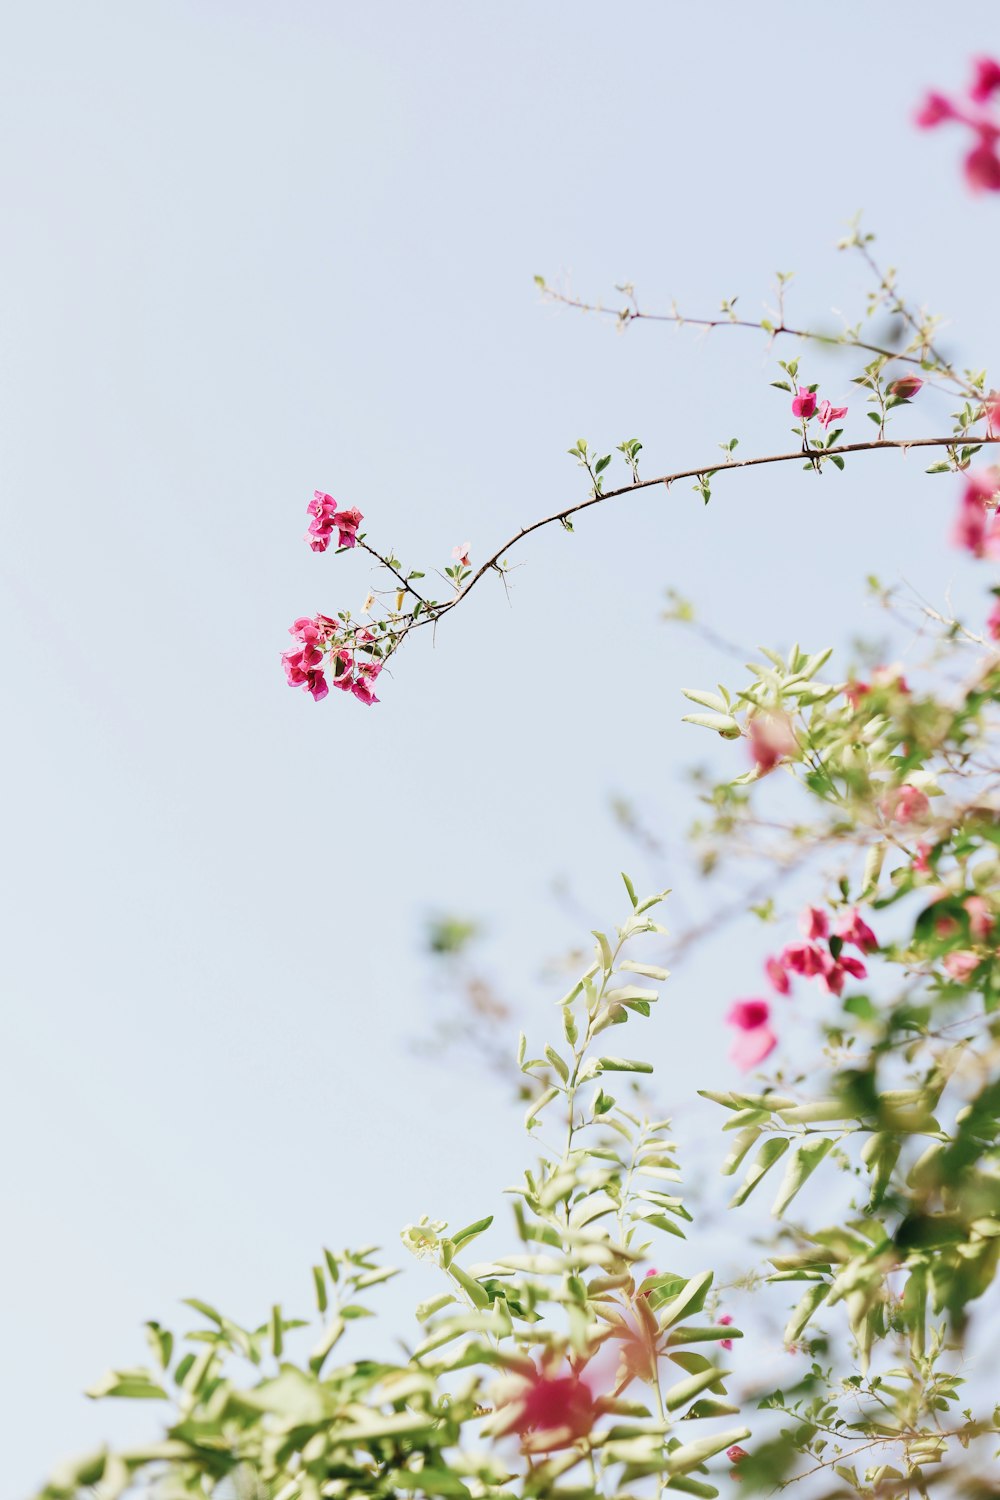 분홍색 꽃이 있는 녹색 잎 식물의 bokeh 사진